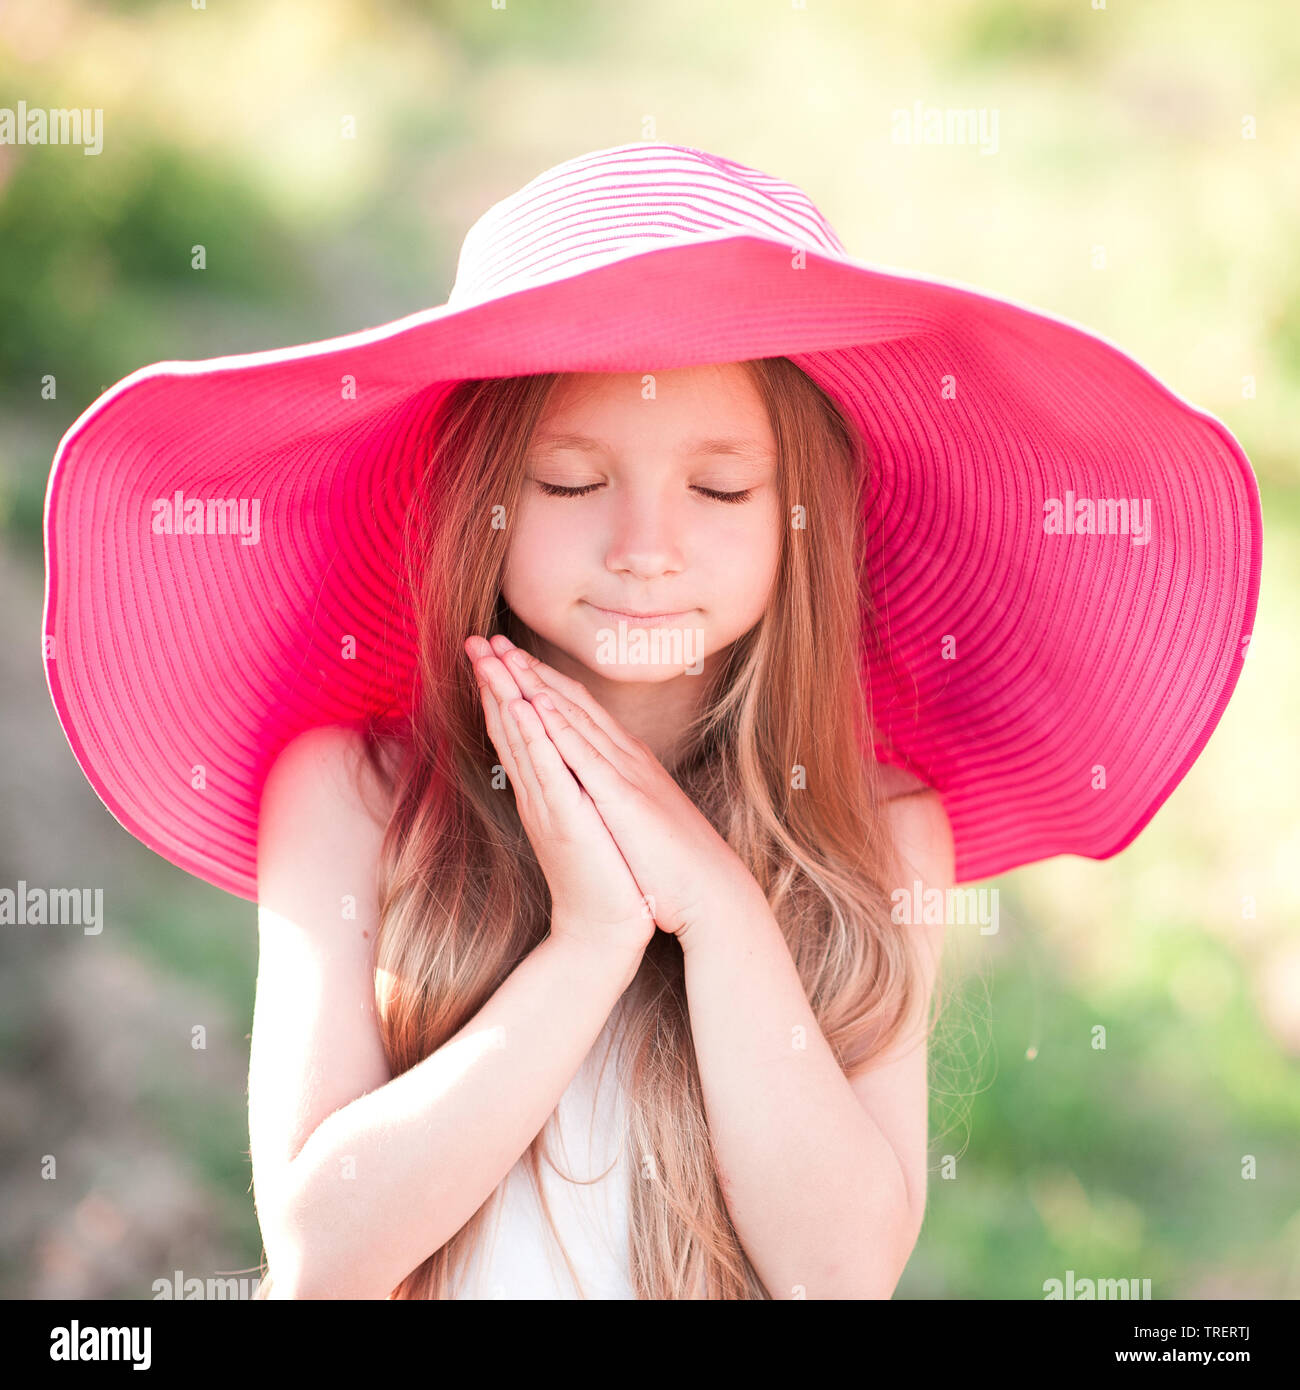 Cute kid niña 4-5 años vistiendo sombrero de paja y mochila rosa al aire  libre. Mirando hacia adelante. La temporada de verano Fotografía de stock -  Alamy